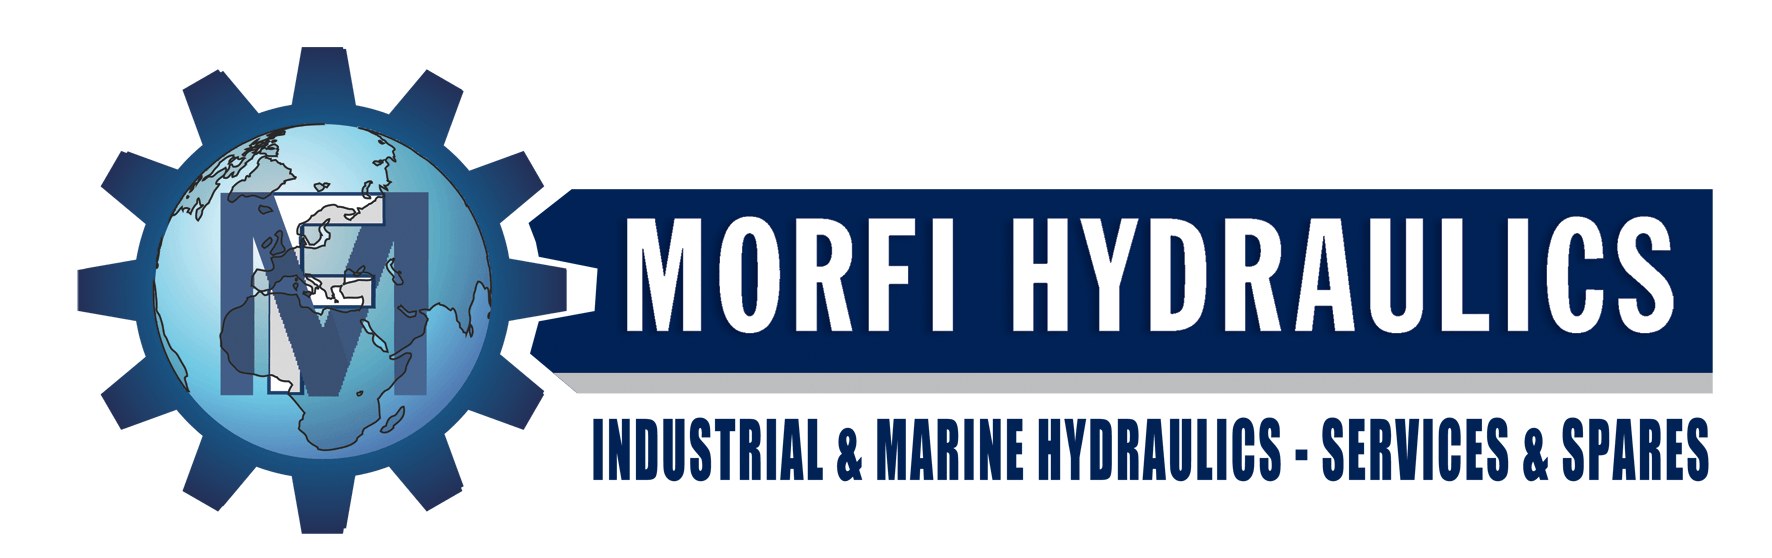 Hydraulics Logo - Morfi Hydraulics.gr. Industrial And Marine Hydraulics